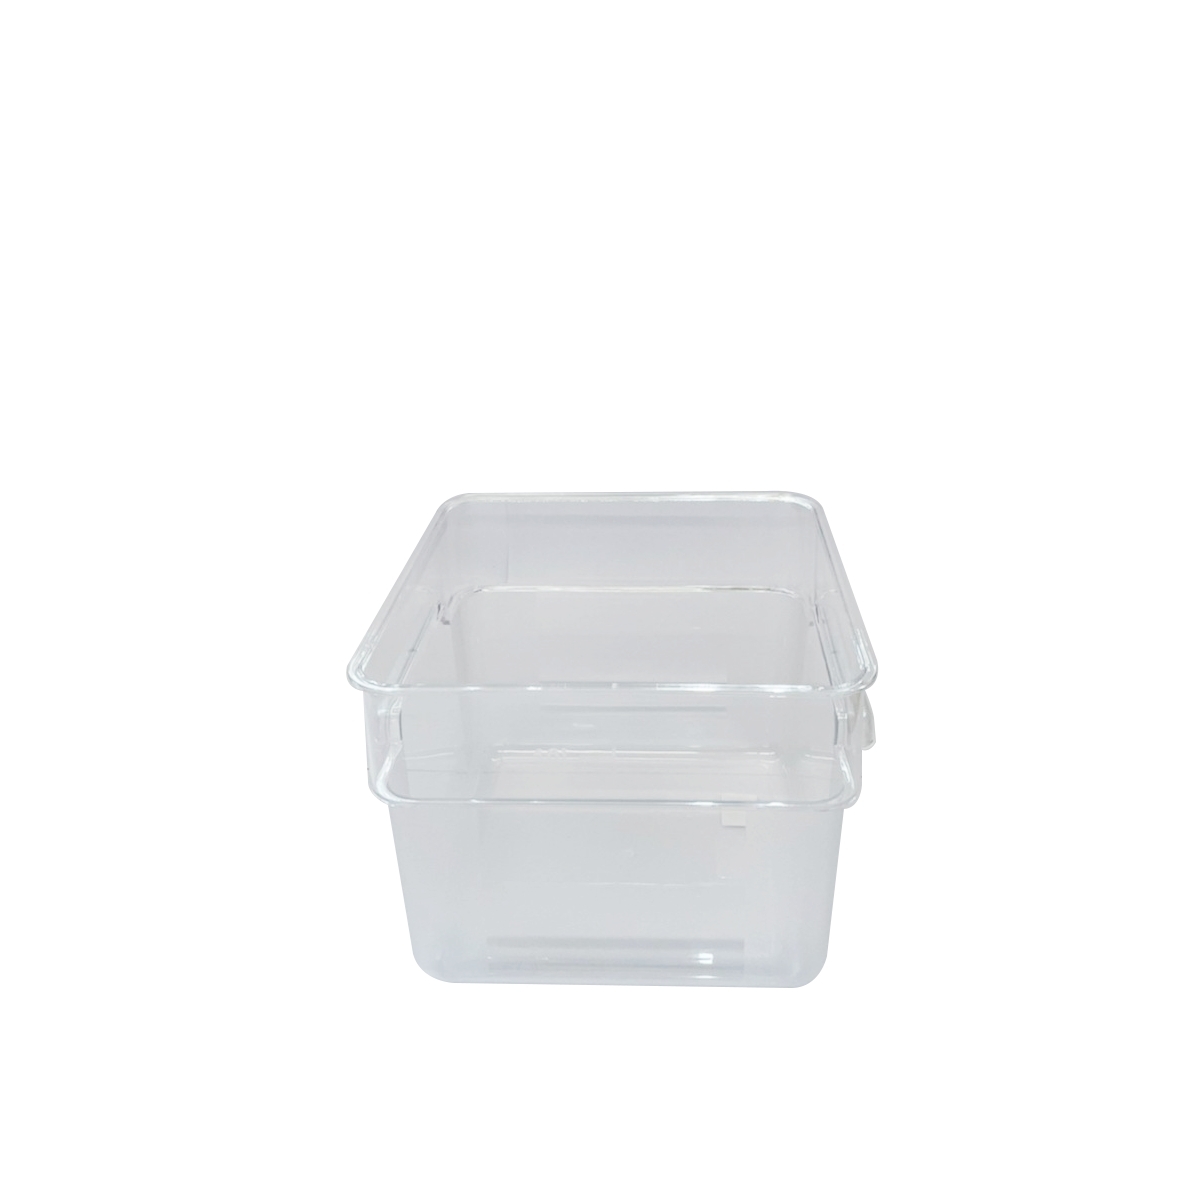 กล่องใส่วัตถุดิบ กล่องใส่อาหาร แบบใส ทรงเหลี่ยม, 3.5 ลิตร ไม่รวมฝา ได้มาตรฐาน NSF เข้าห้องเย็นได้ ทนแรงกระแทกได้ดี